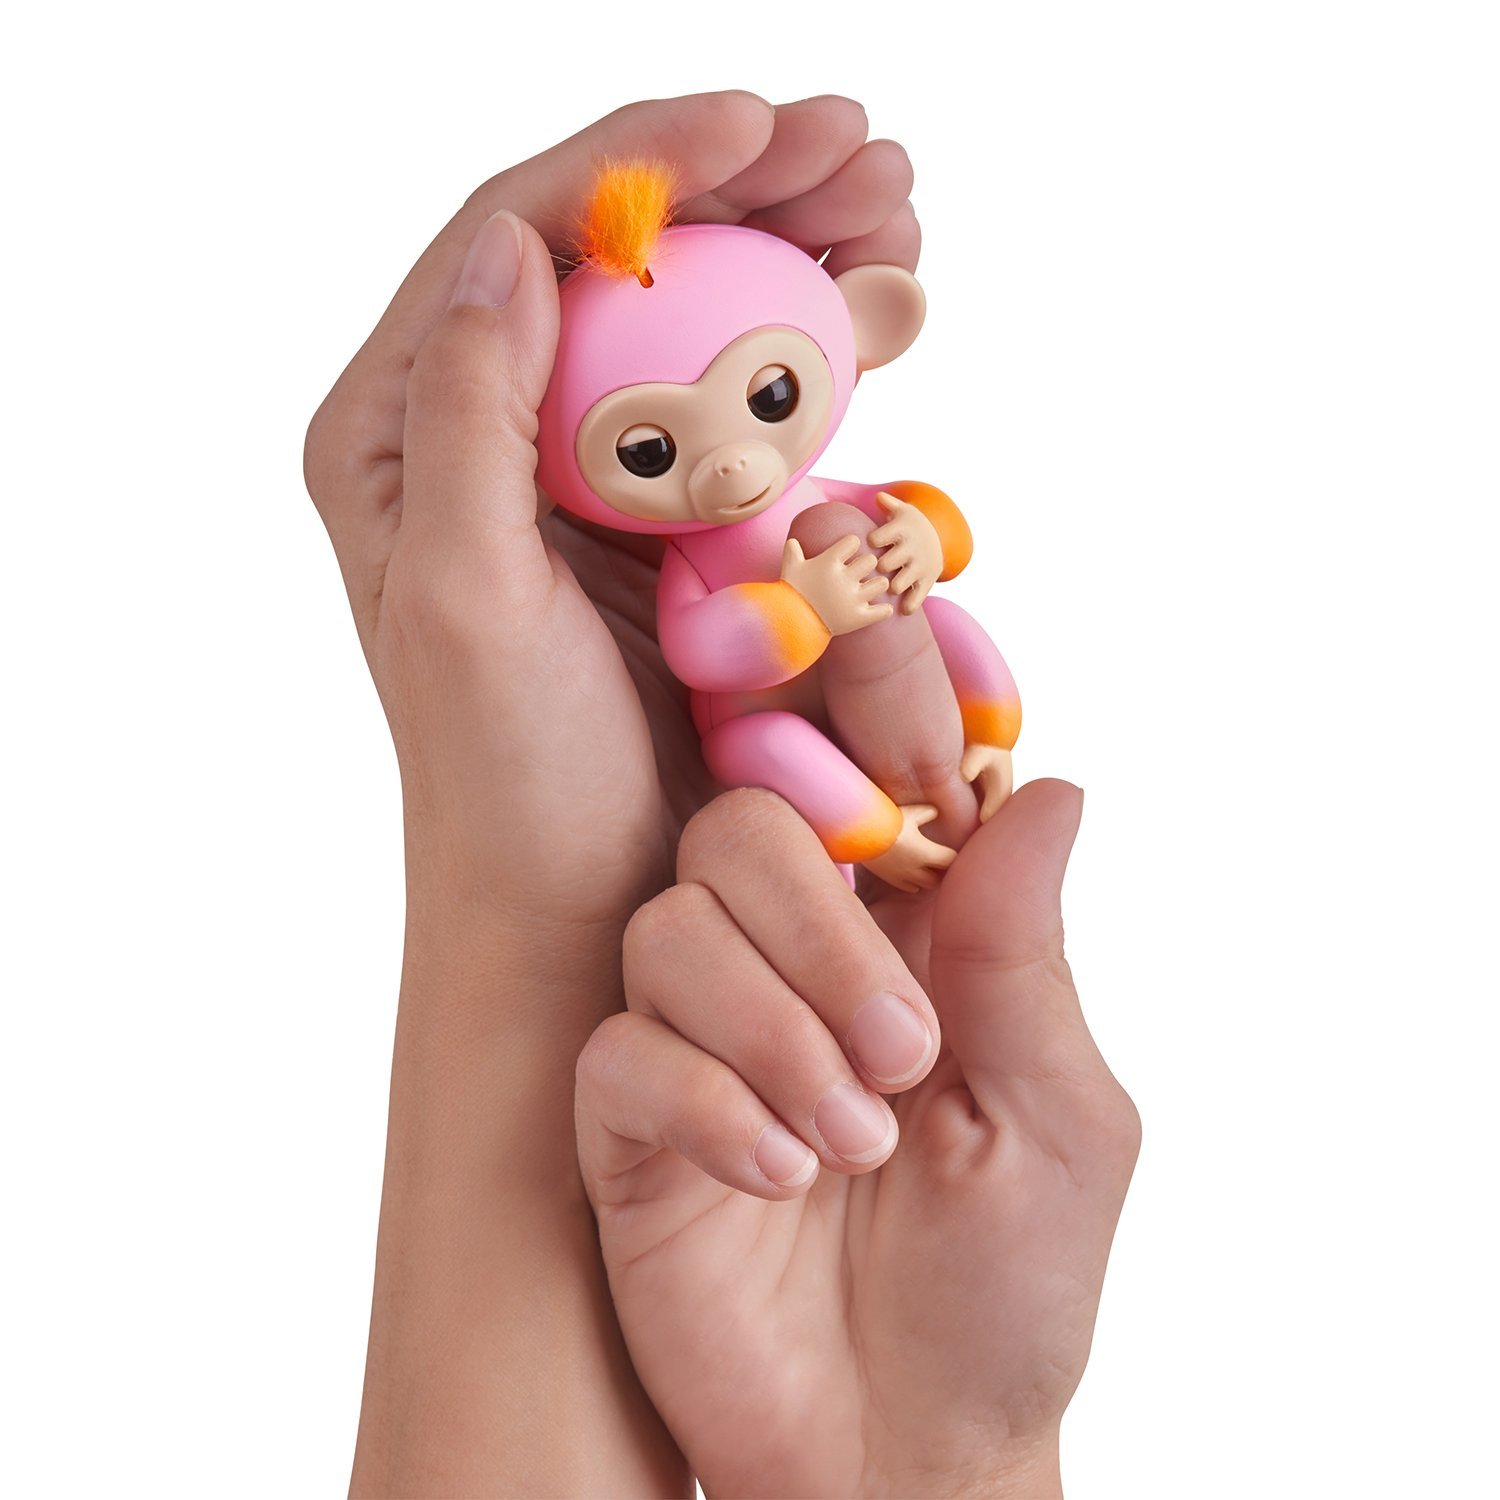 Интерактивная обезьянка Саммер, розовая с оранжевым, 12 см  